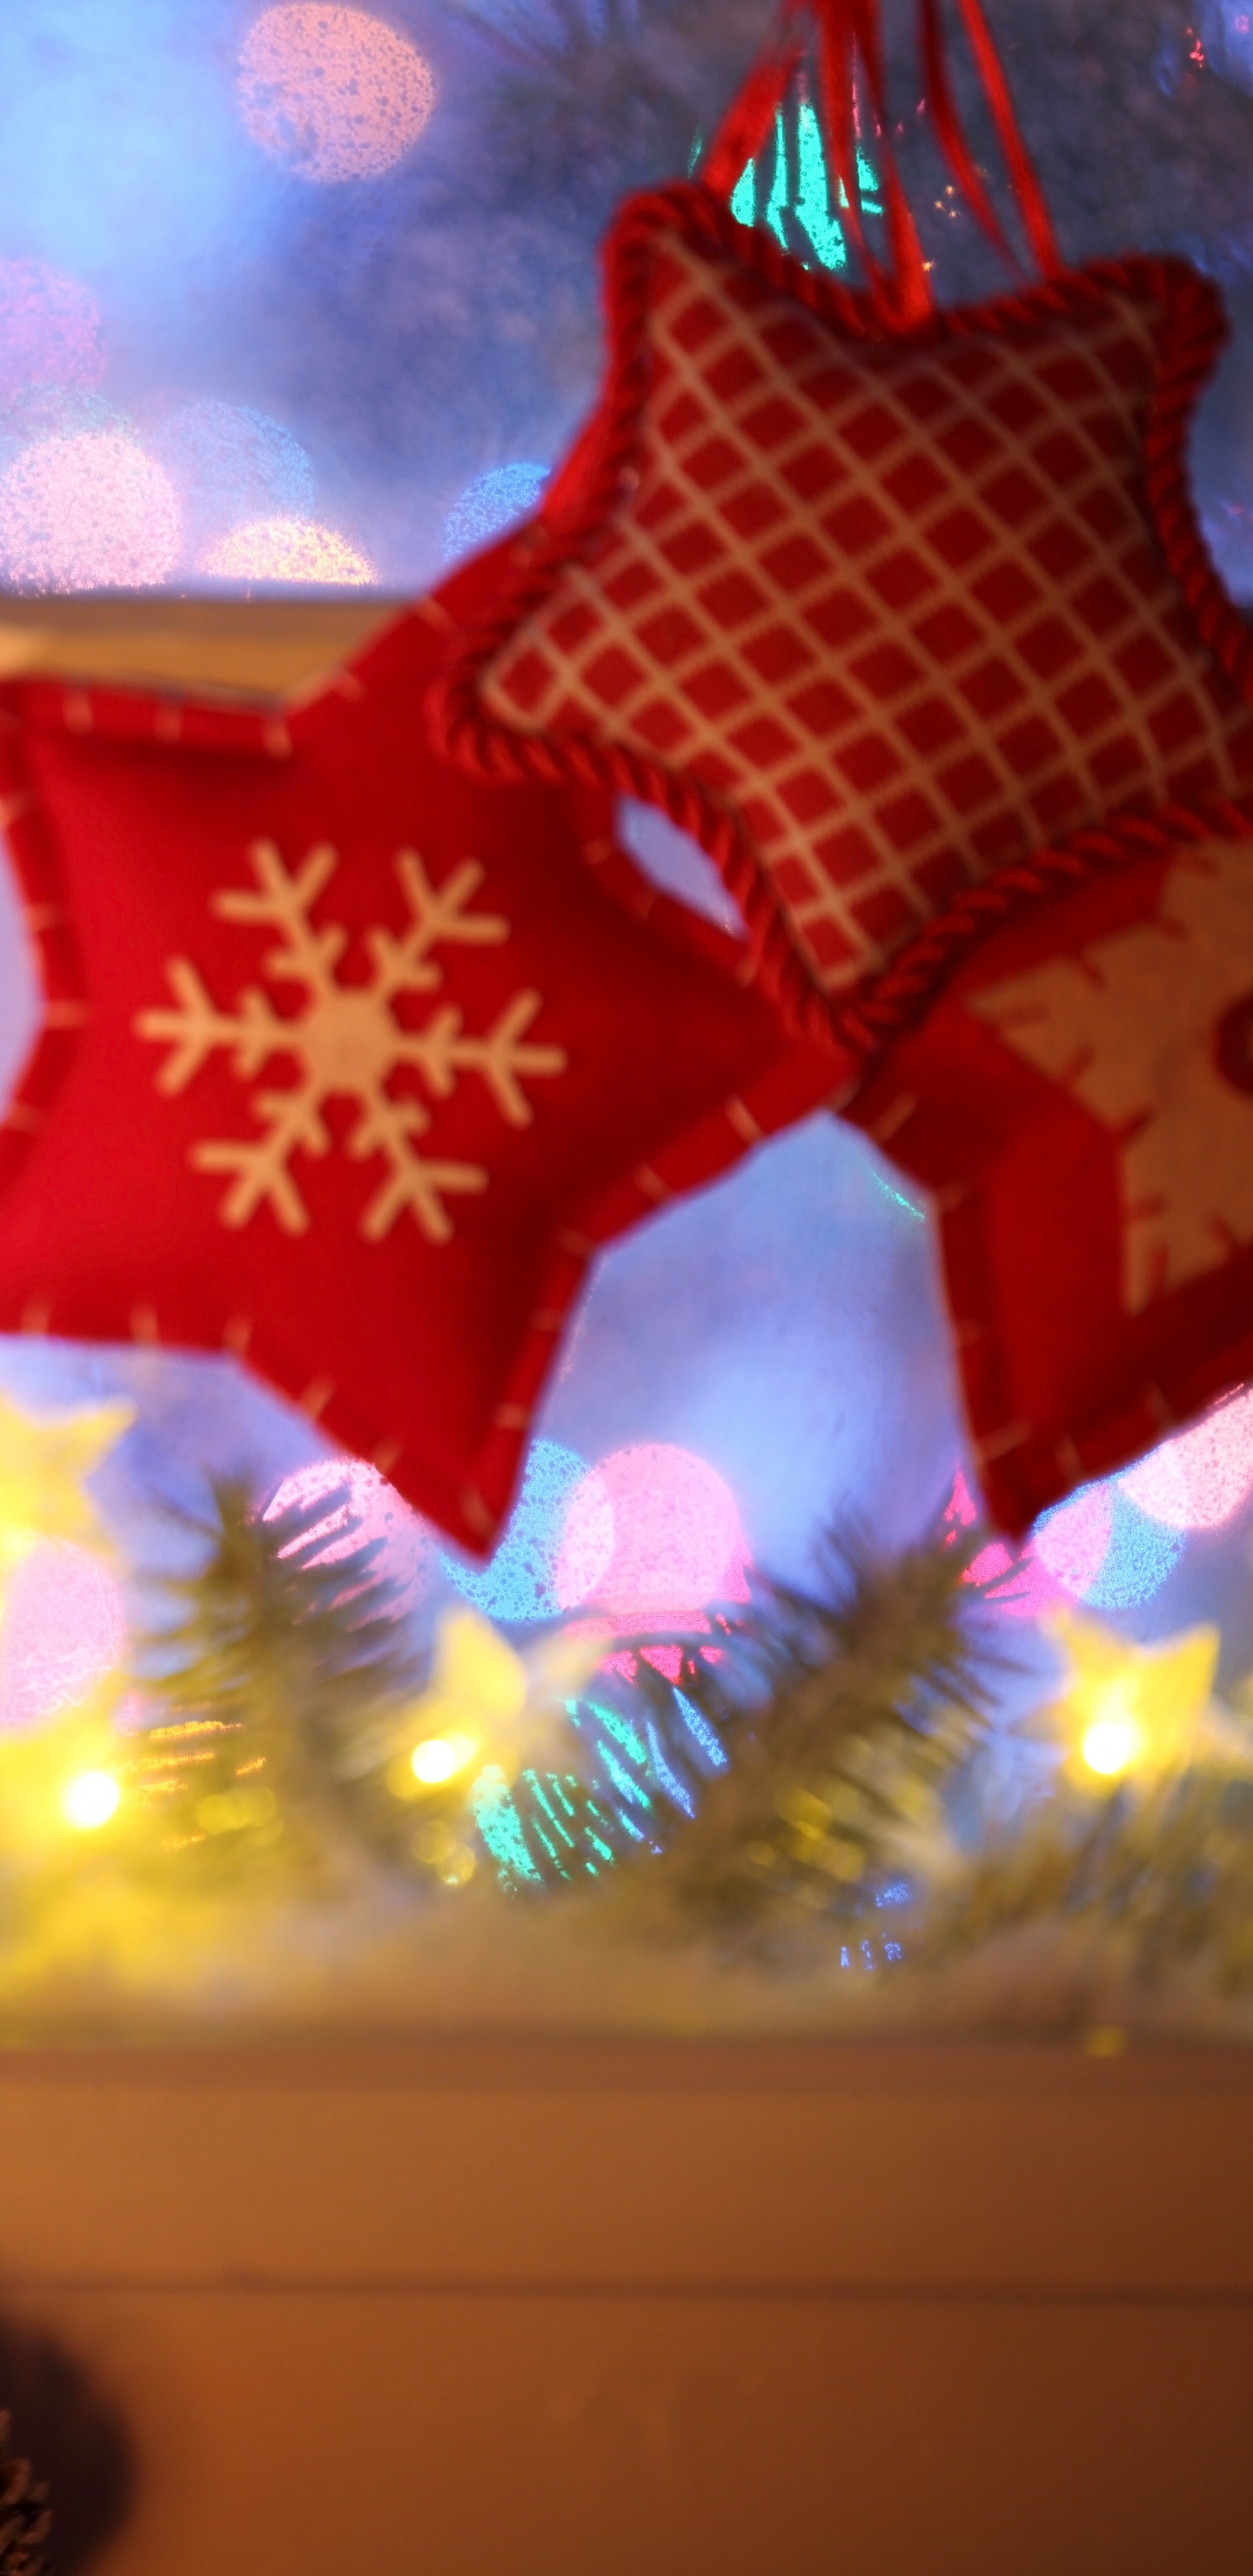 Le Jour De Noël, Décoration de Noël, Les Lumières de Noël, Noël de la Fenêtre, Lumière. Wallpaper in 1440x2960 Resolution